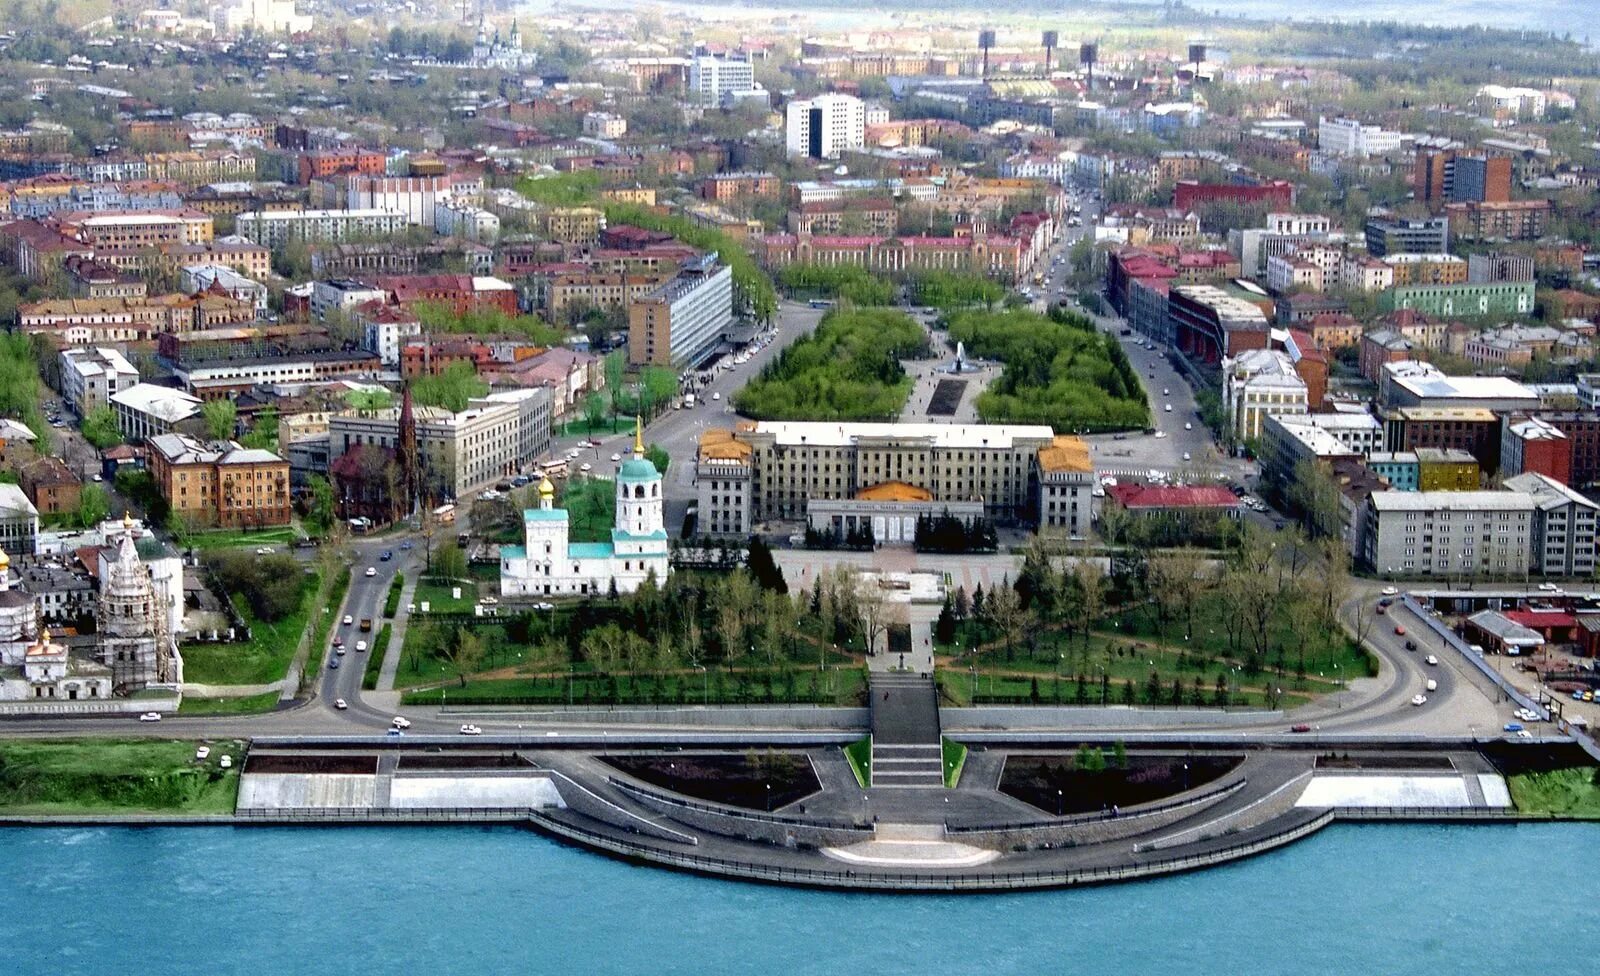 Иркутск центр города. Иркутск с птичьего полета. Иркутск административный центр. Центр Иркутска с высоты.